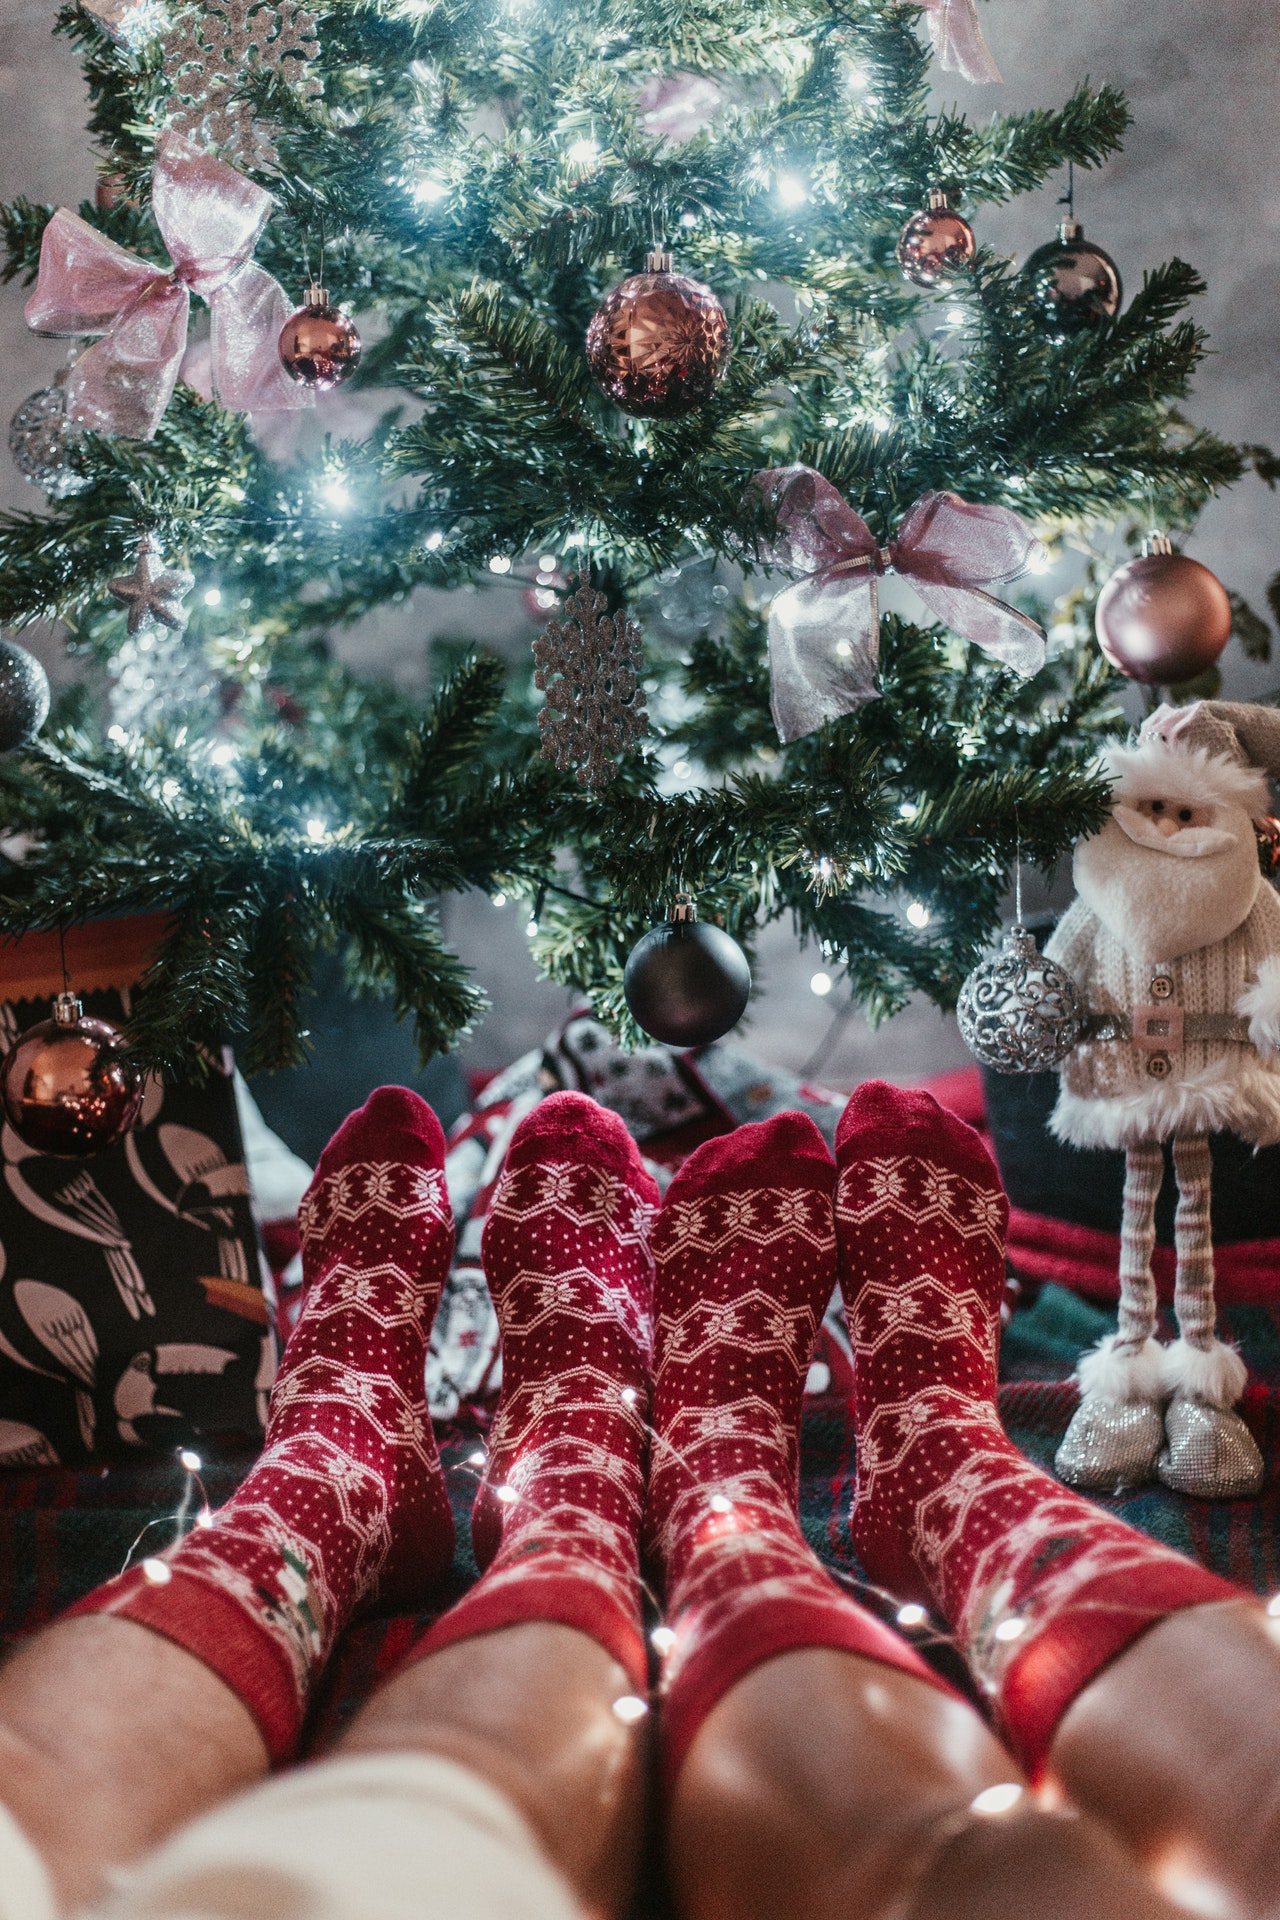 Comment fixer le prix de votre mini-séance de photoshoot de Noël